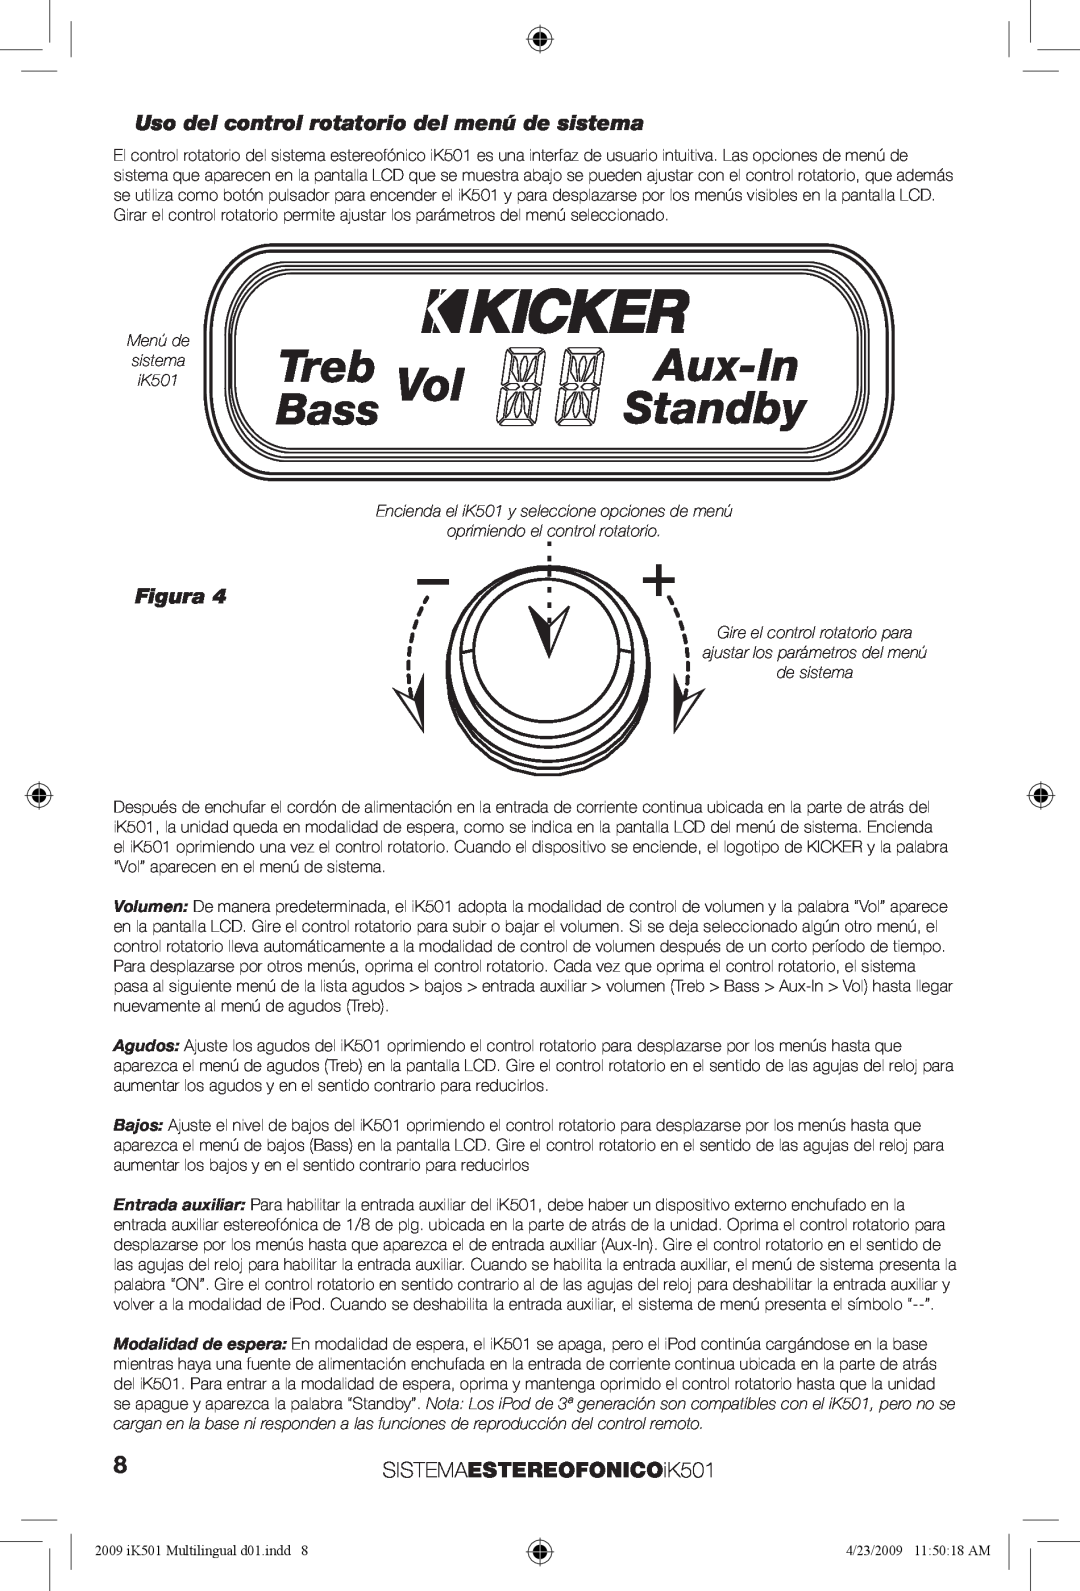 Kicker Treb, Aux-In, Standby, Bass, Uso del control rotatorio del menú de sistema, 8SISTEMAESTEREOFONICOiK501, Figura 